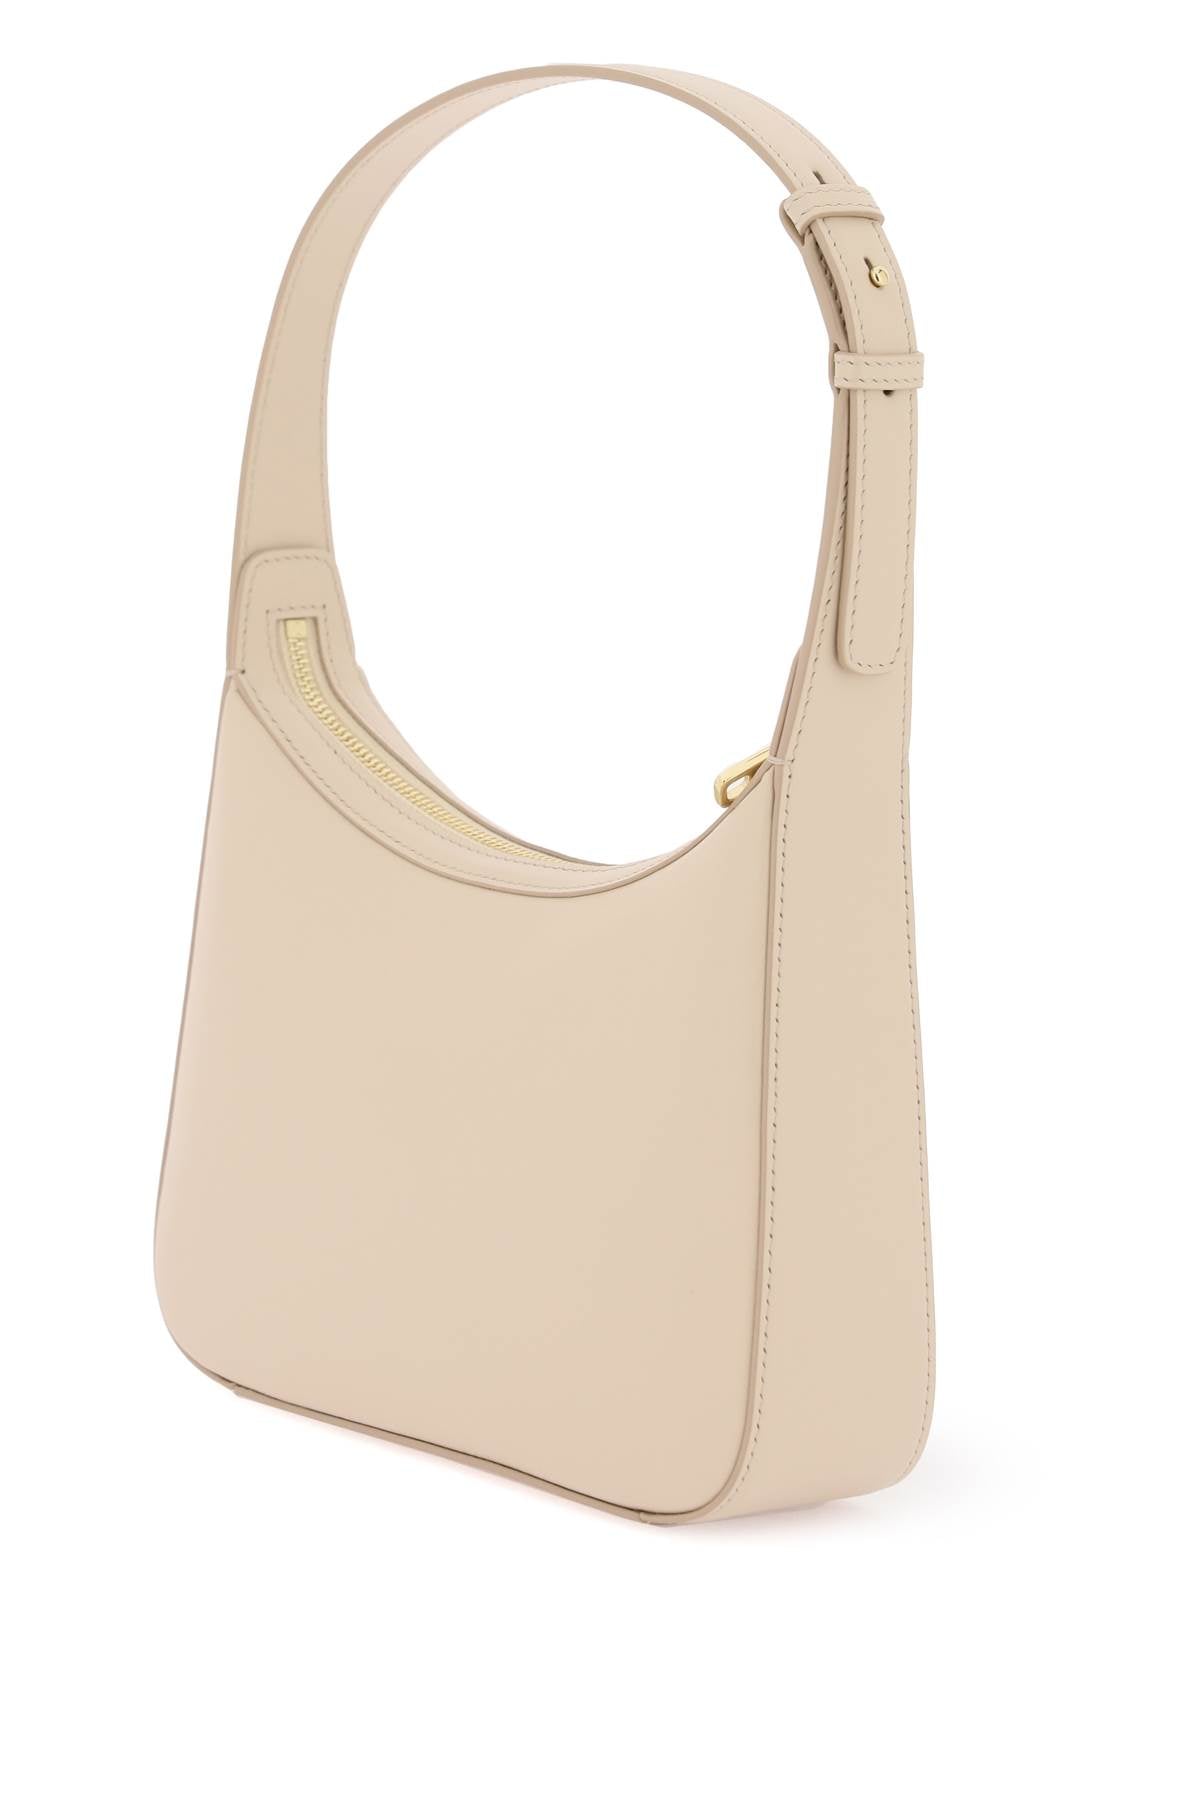 Dolce &amp; Gabbana 3.5 Smooth Leather Shoulder Bag Cream